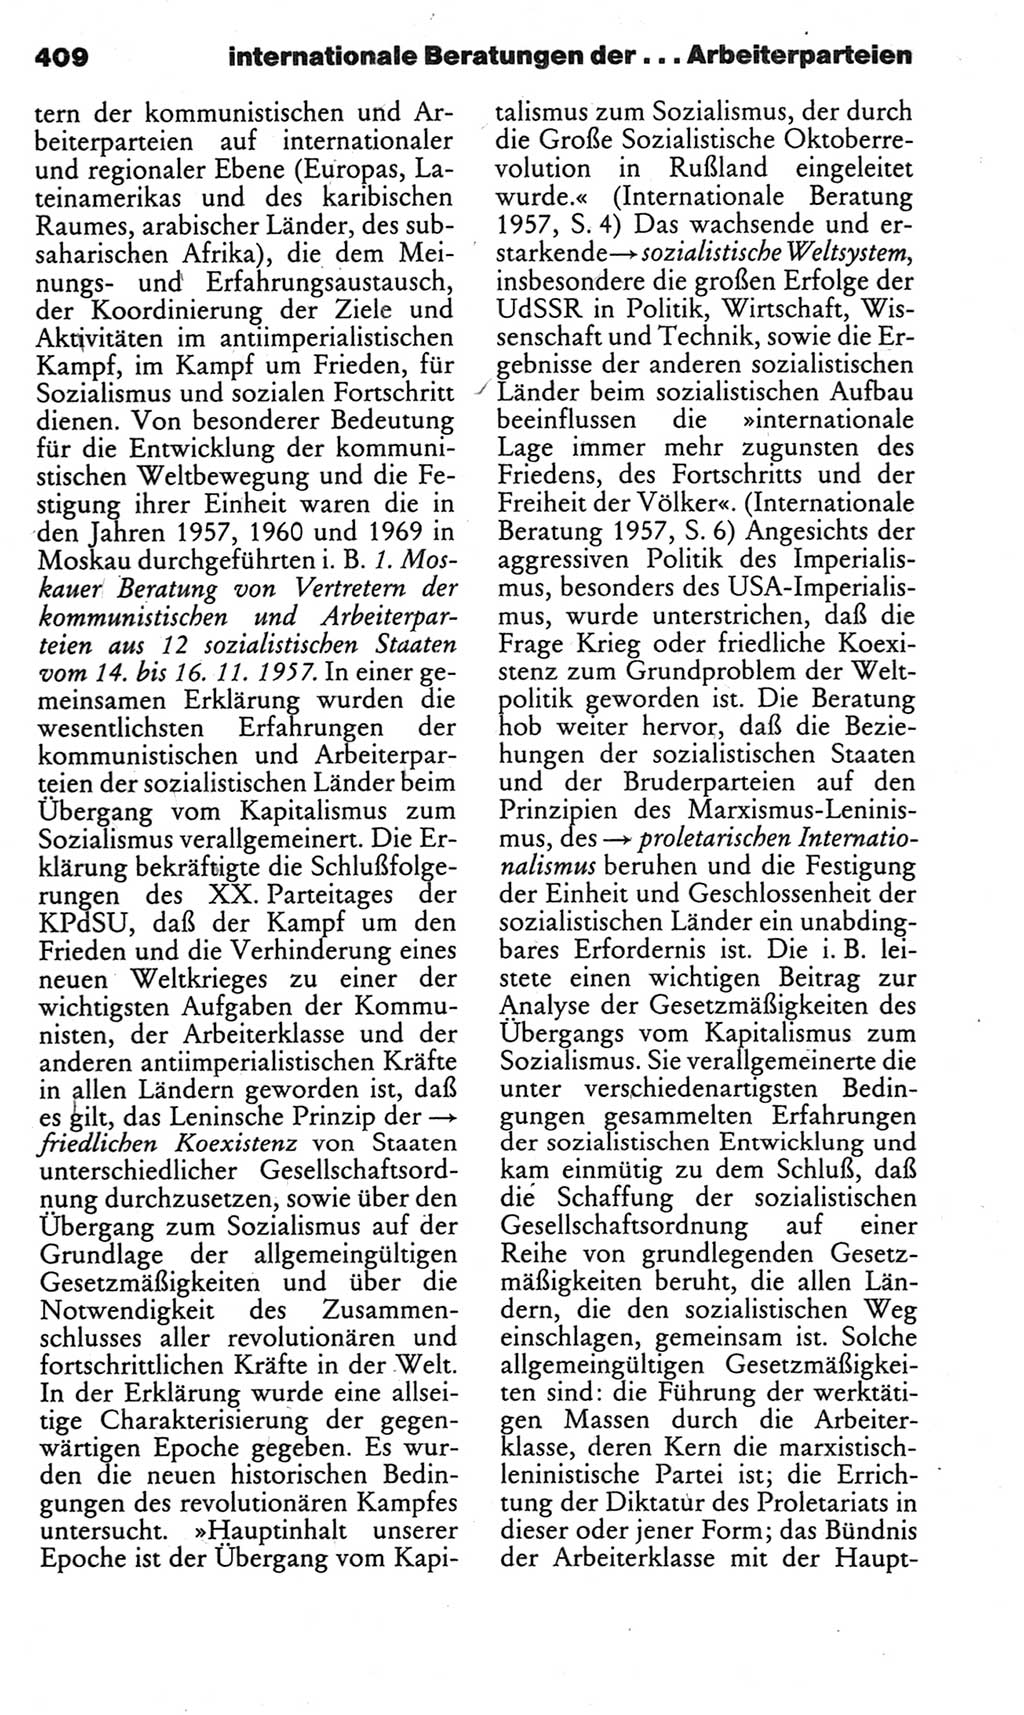 Kleines politisches Wörterbuch [Deutsche Demokratische Republik (DDR)] 1983, Seite 409 (Kl. pol. Wb. DDR 1983, S. 409)